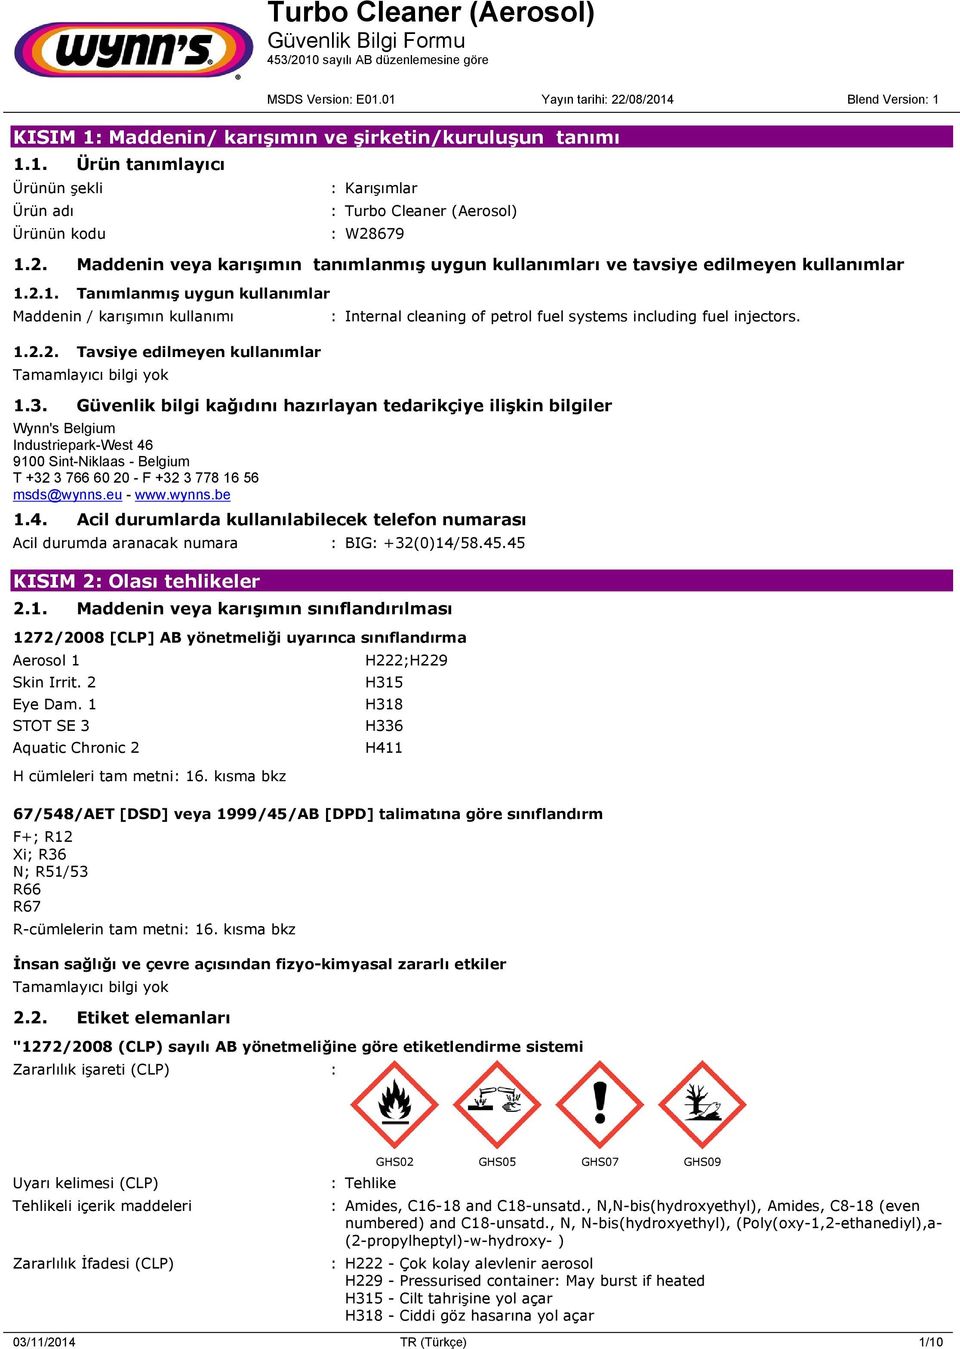 1.3. Güvenlik bilgi kağıdını hazırlayan tedarikçiye ilişkin bilgiler Wynn's Belgium Industriepark-West 46 9100 Sint-Niklaas - Belgium T +32 3 766 60 20 - F +32 3 778 16 56 msds@wynns.eu - www.wynns.be 1.